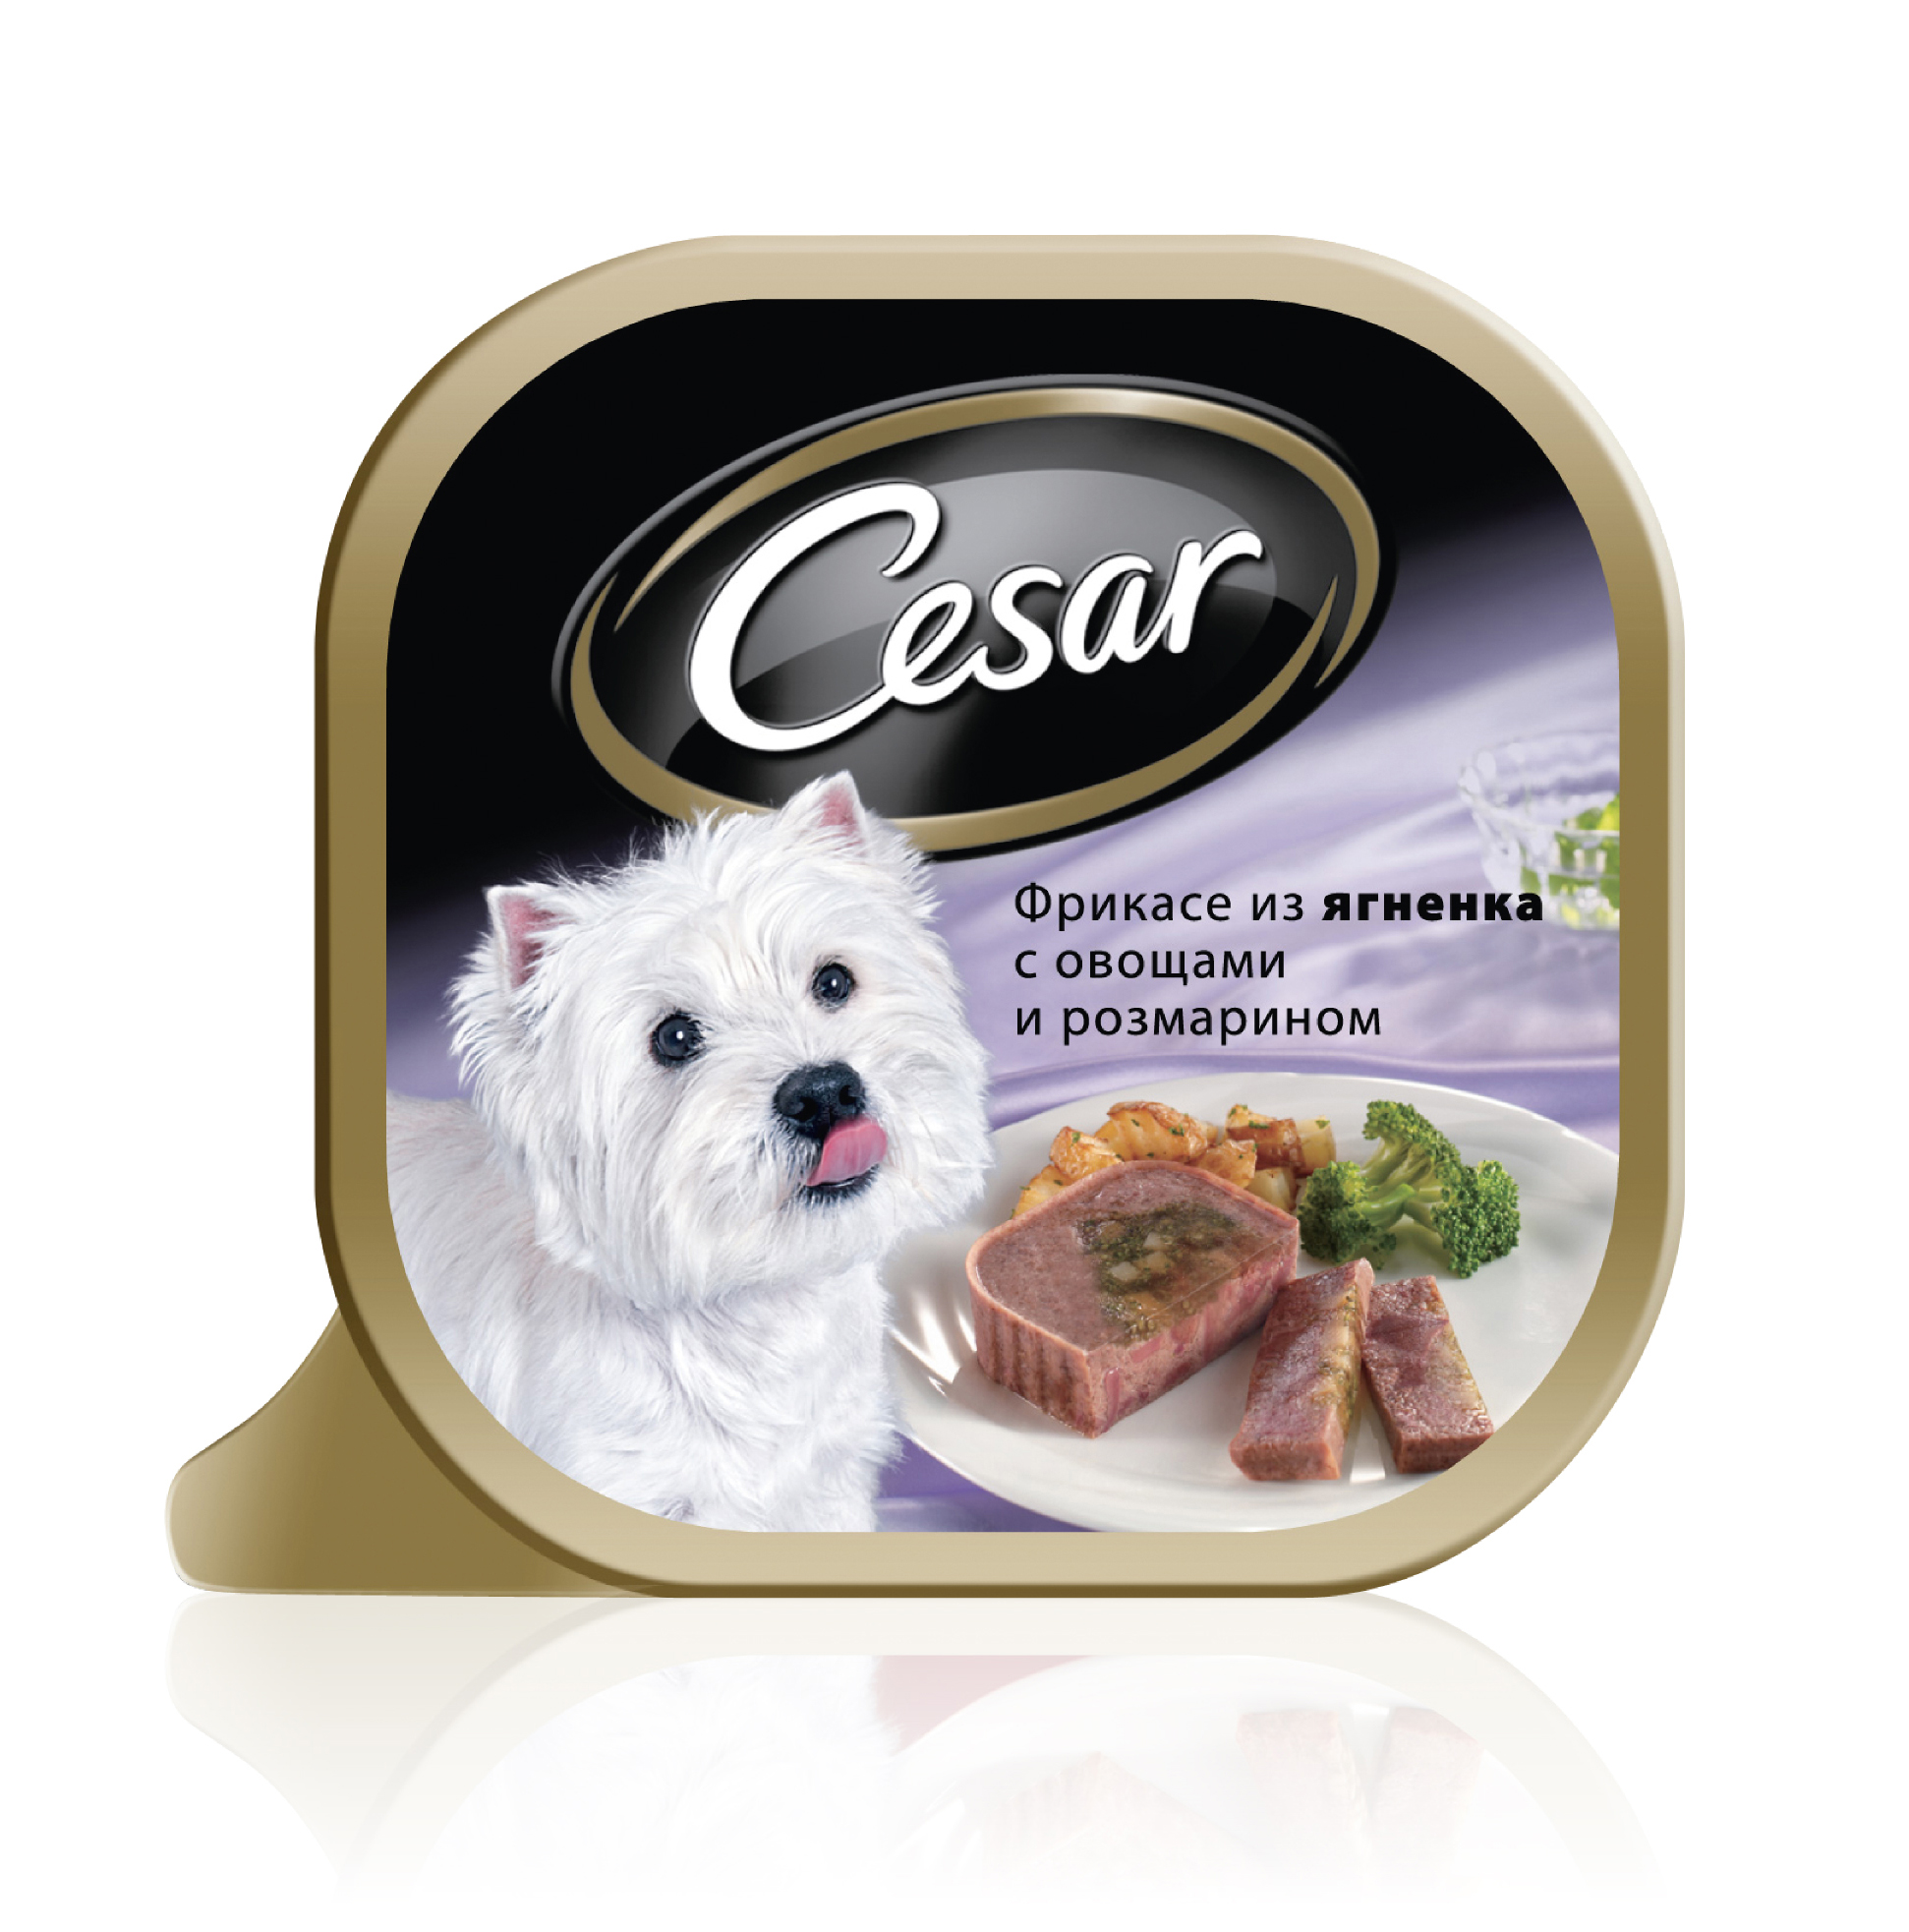 Купить корма для собак щенков. Влажный корм для собак Cesar из говядины с овощами 100г. Cesar консервы для собак. Влажный корм для собак Cesar.